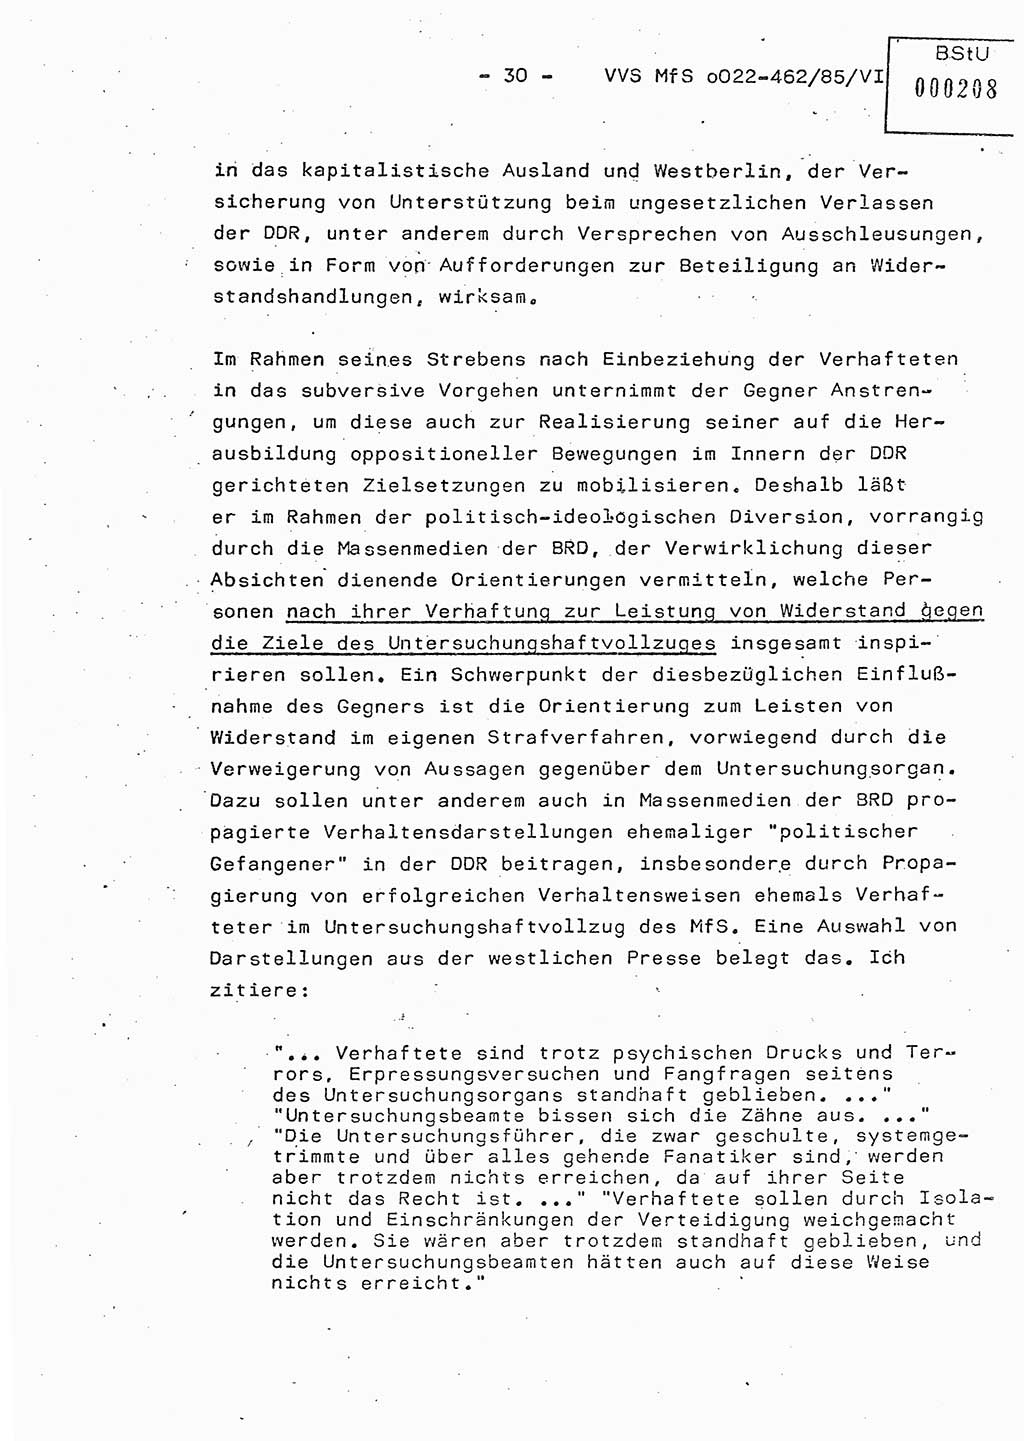 Der Untersuchungshaftvollzug im MfS, Schulungsmaterial Teil Ⅵ, Ministerium für Staatssicherheit [Deutsche Demokratische Republik (DDR)], Abteilung (Abt.) ⅩⅣ, Vertrauliche Verschlußsache (VVS) o022-462/85/Ⅵ, Berlin 1985, Seite 30 (Sch.-Mat. Ⅵ MfS DDR Abt. ⅩⅣ VVS o022-462/85/Ⅵ 1985, S. 30)